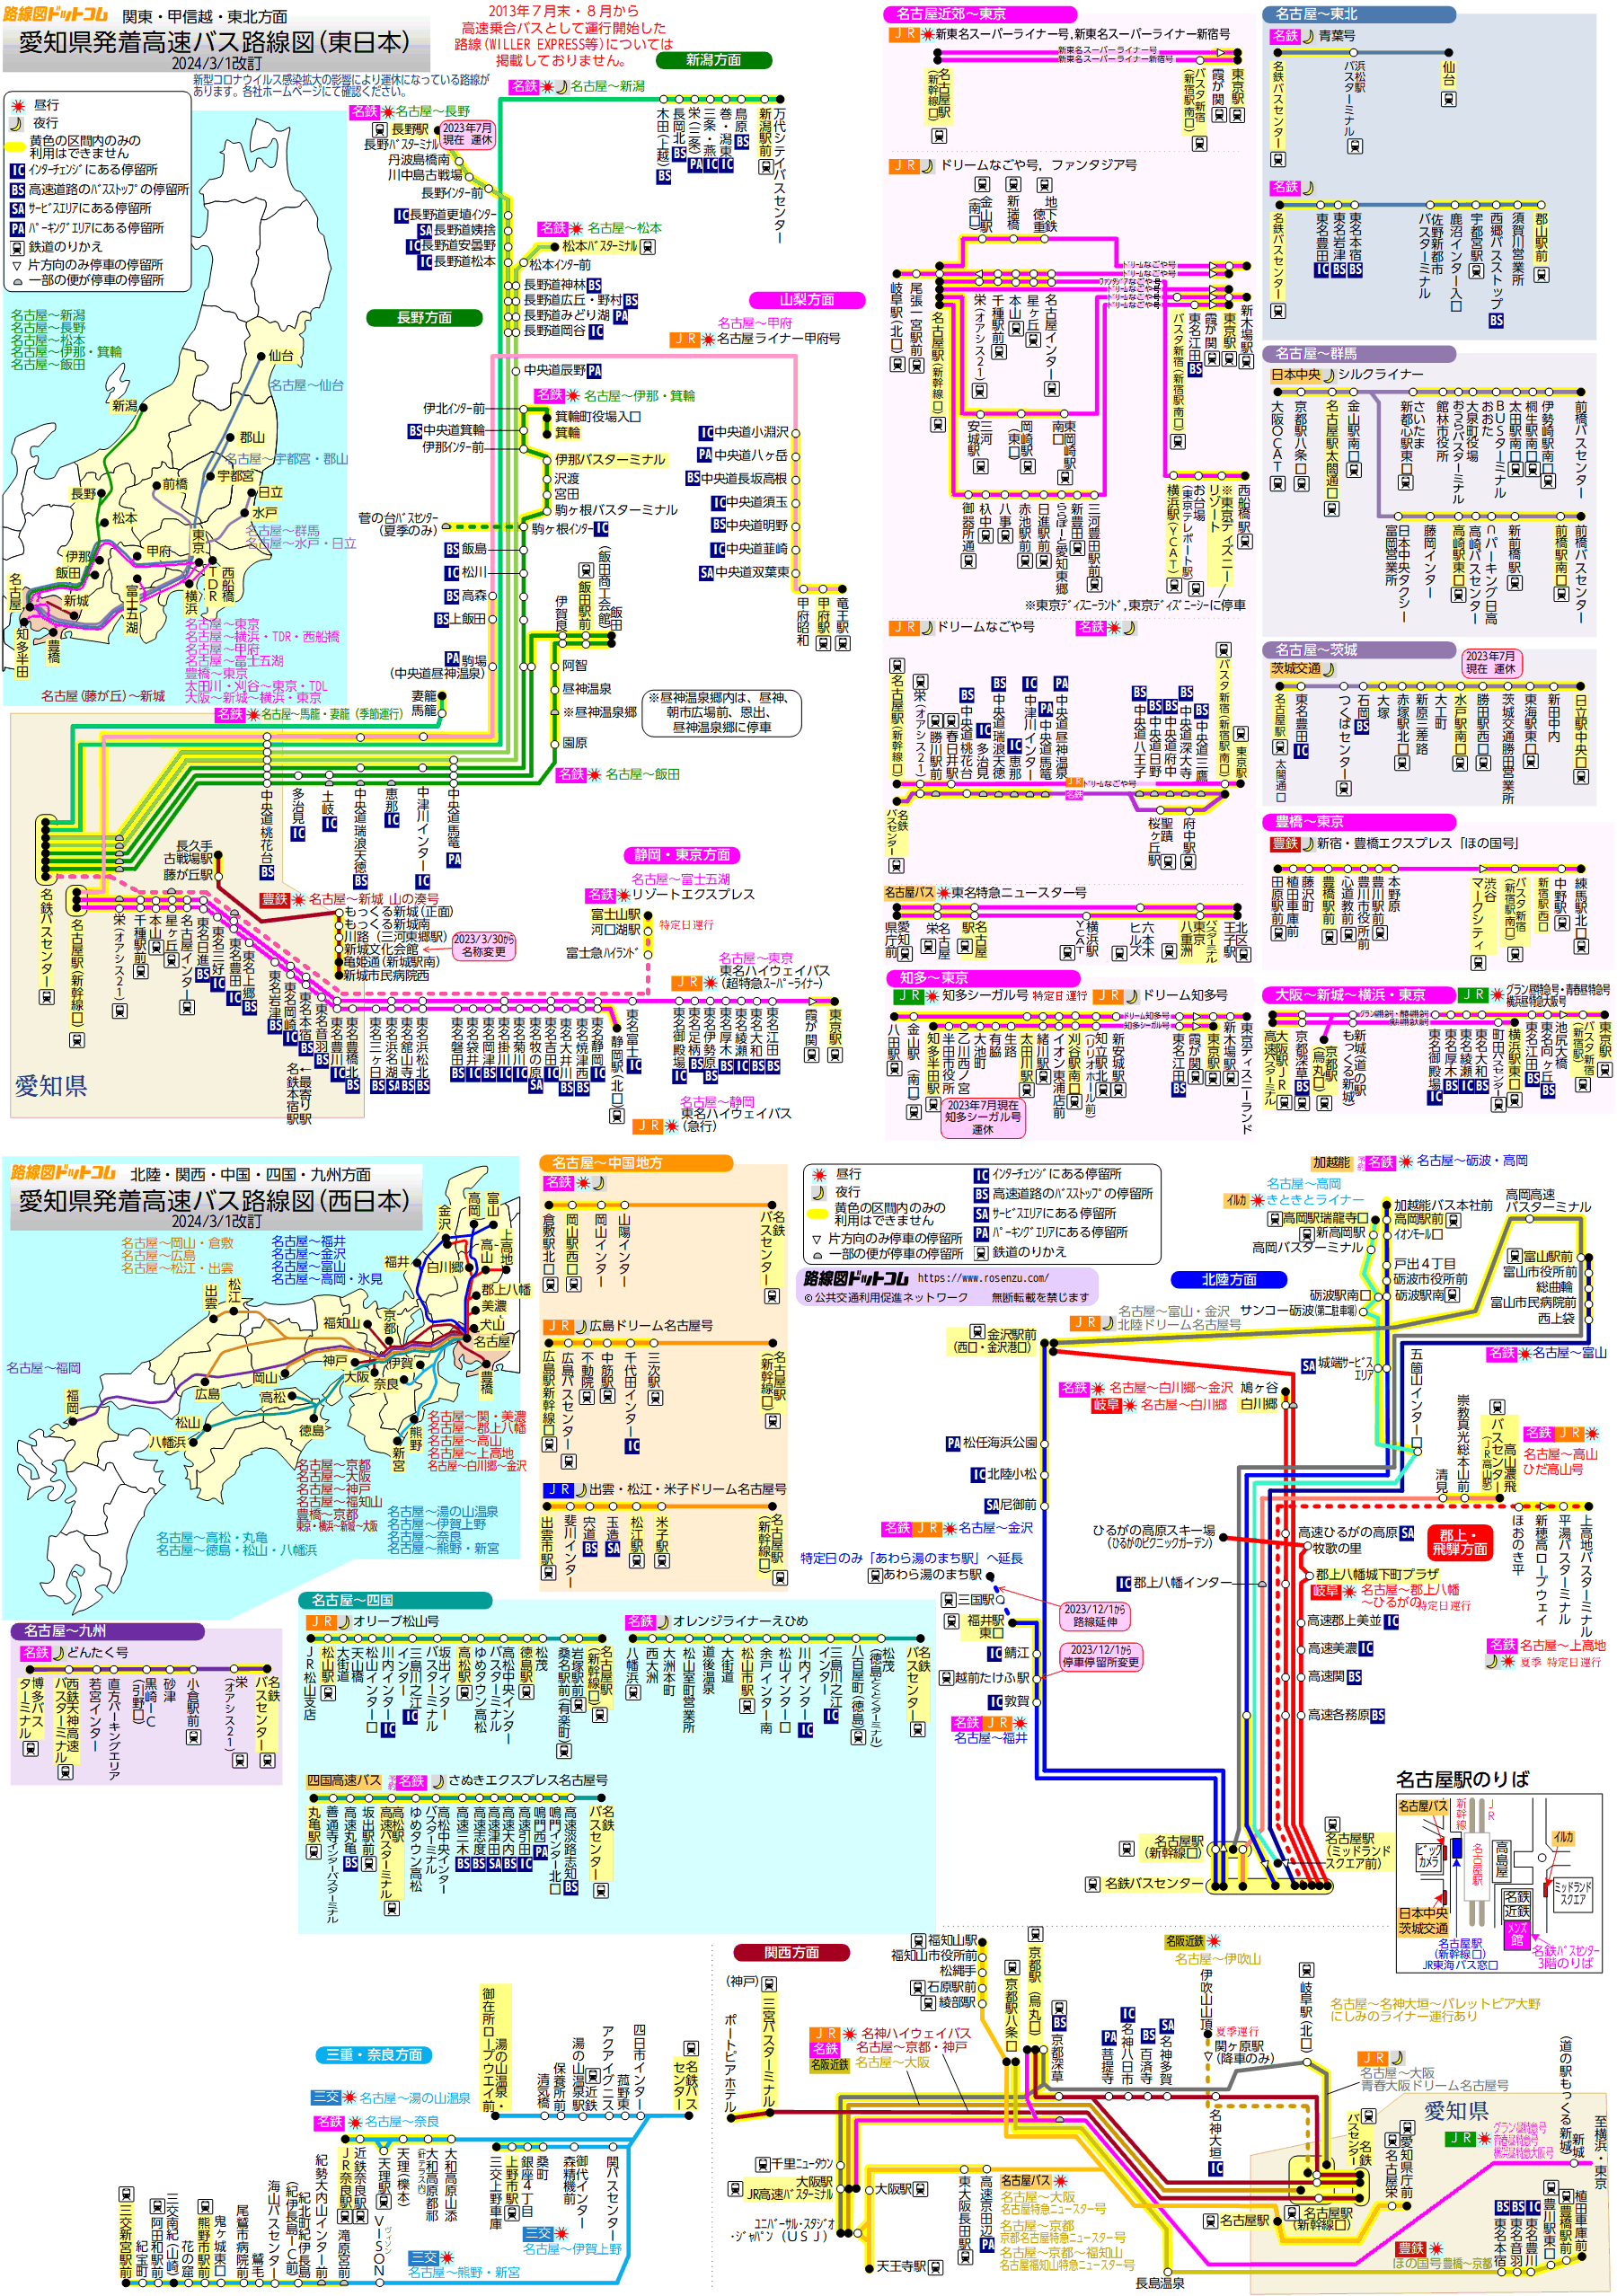 路線図ドットコム 高速バス 名古屋 愛知県発着高速バス 特急バス路線図